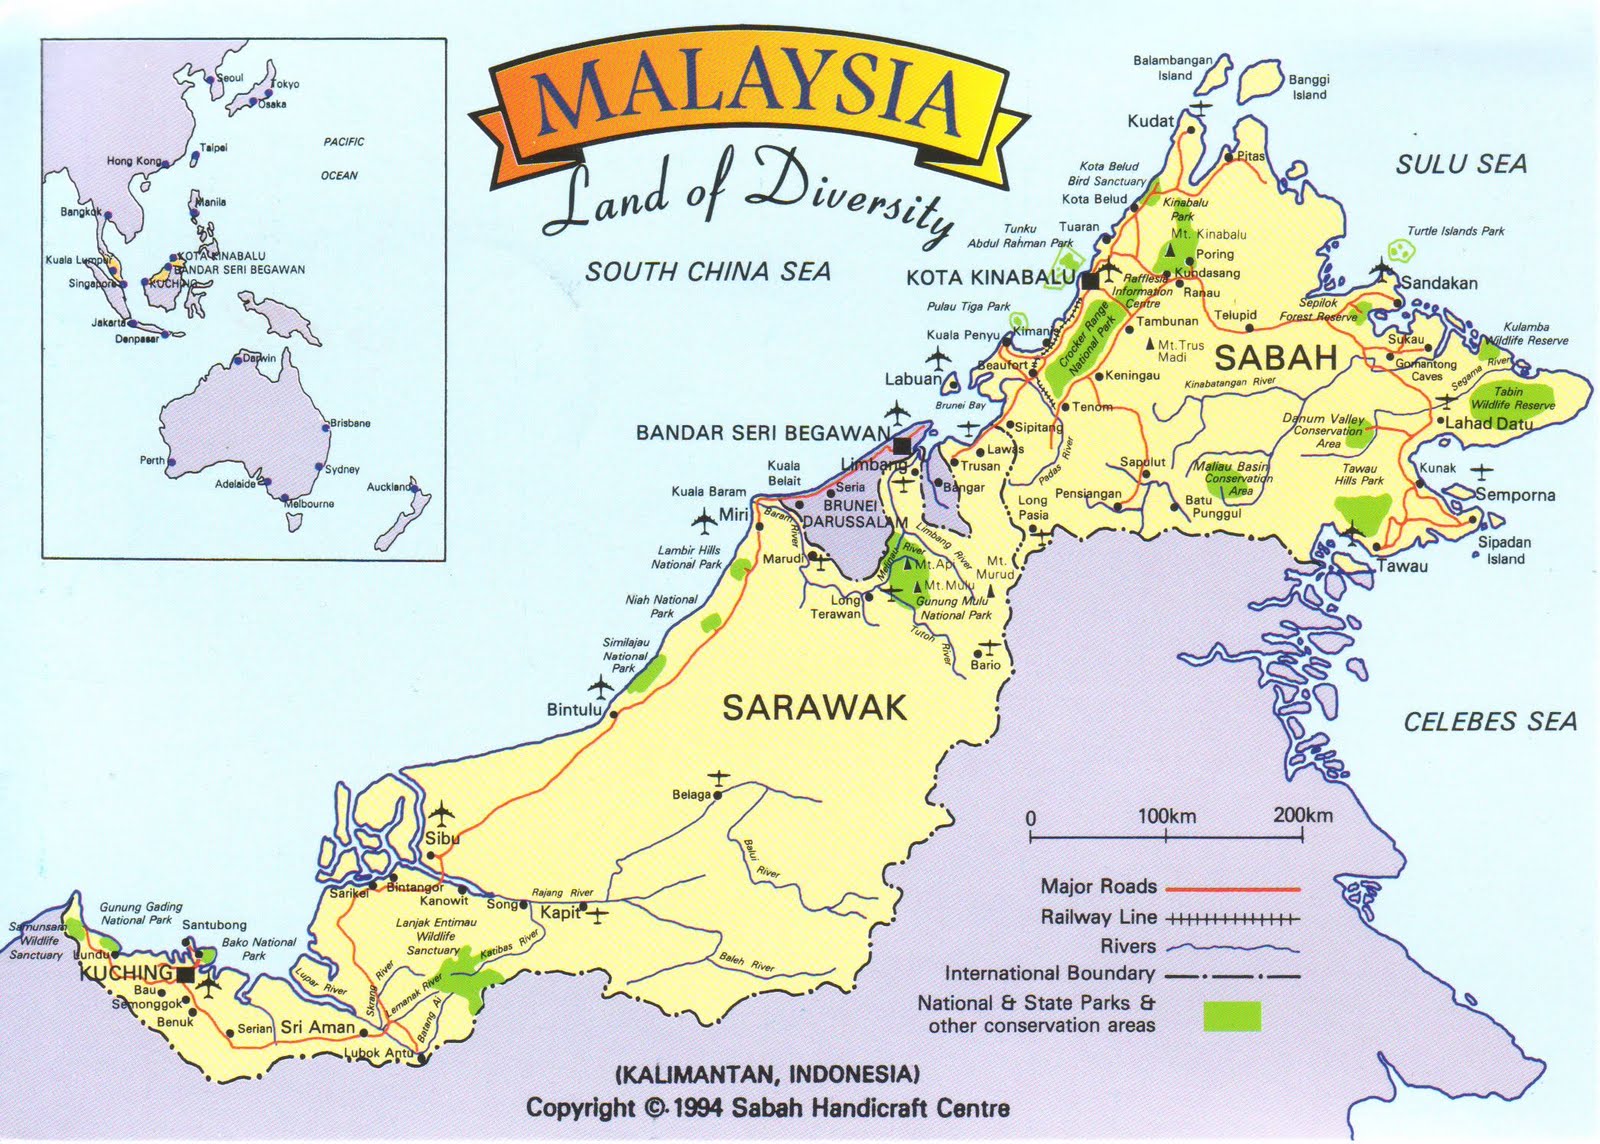 Bản đồ nước Malaysia năm 2024 sẽ được xem là một trang sử mới, cho thấy sự phát triển của quốc gia này từ các trong điểm chiến lược xã hội đến kinh tế và văn hóa. Những hình ảnh mới nhất sẽ giúp khán giả cảm nhận được sự thay đổi trong kiến trúc và đô thị hóa của Malaysia.